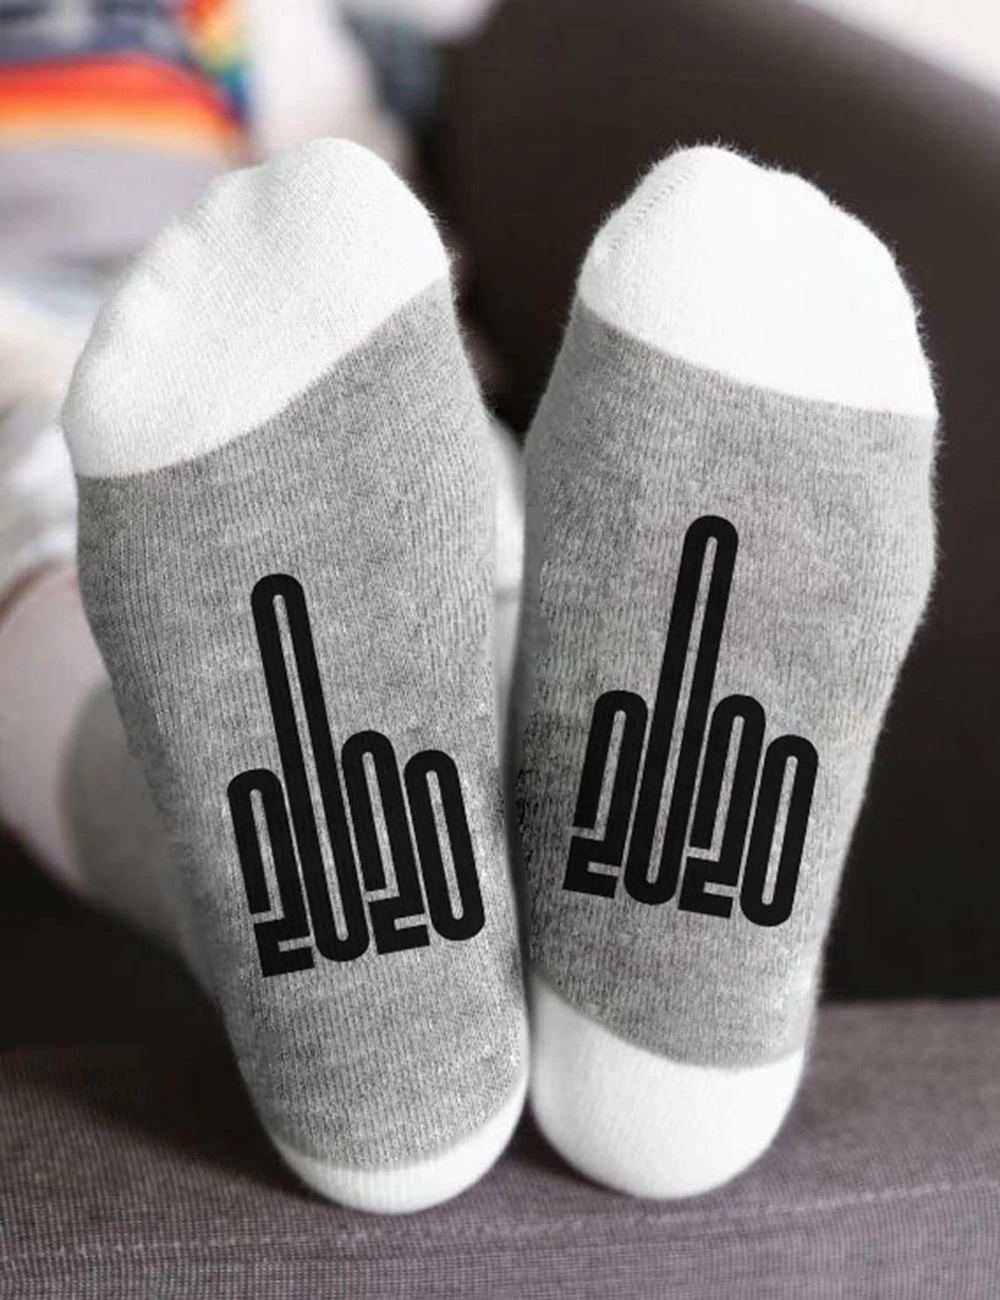 Midder Finger 2020 Socks Ankle Words Novelty Socks